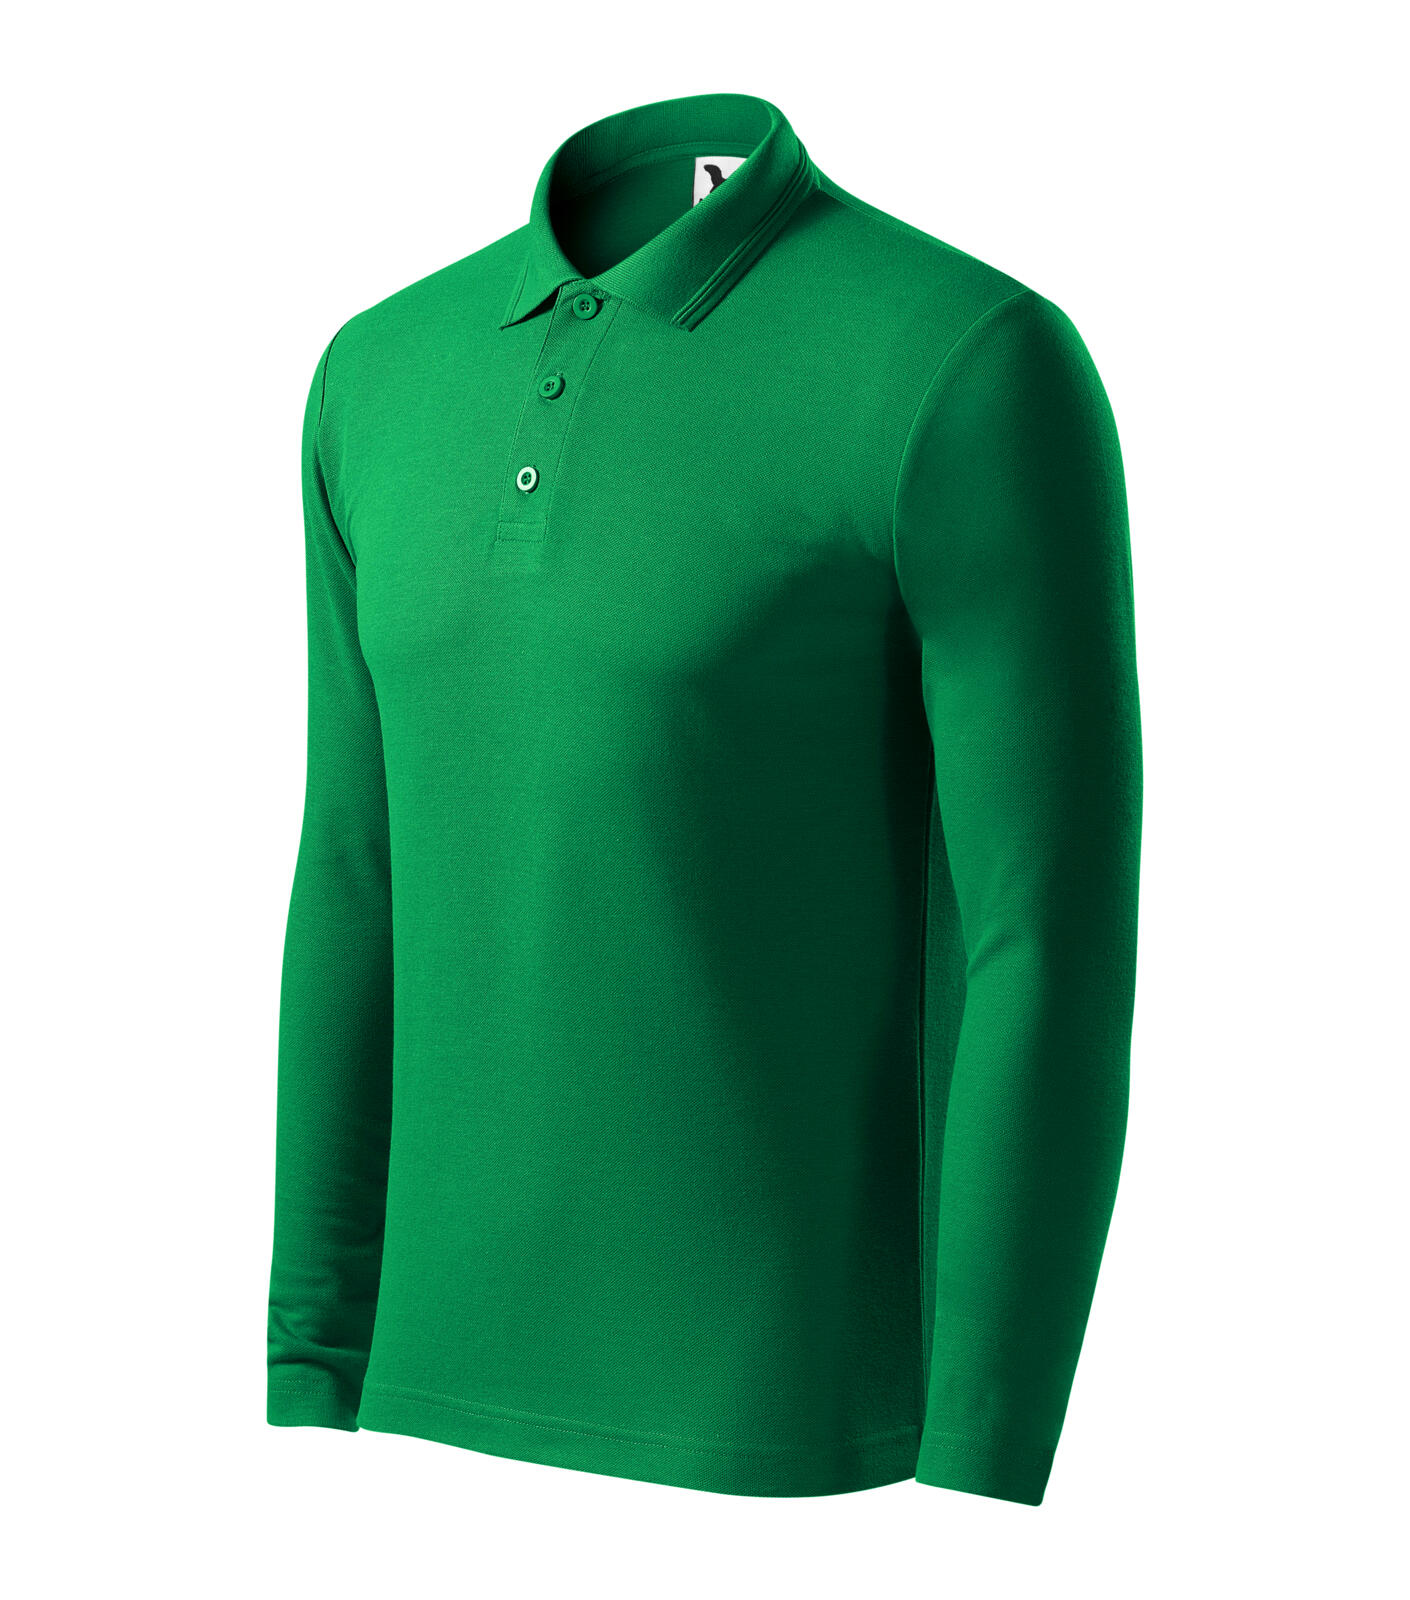 Pique Polo LS Polokošile pánská Barva: středně zelená, Velikost: M